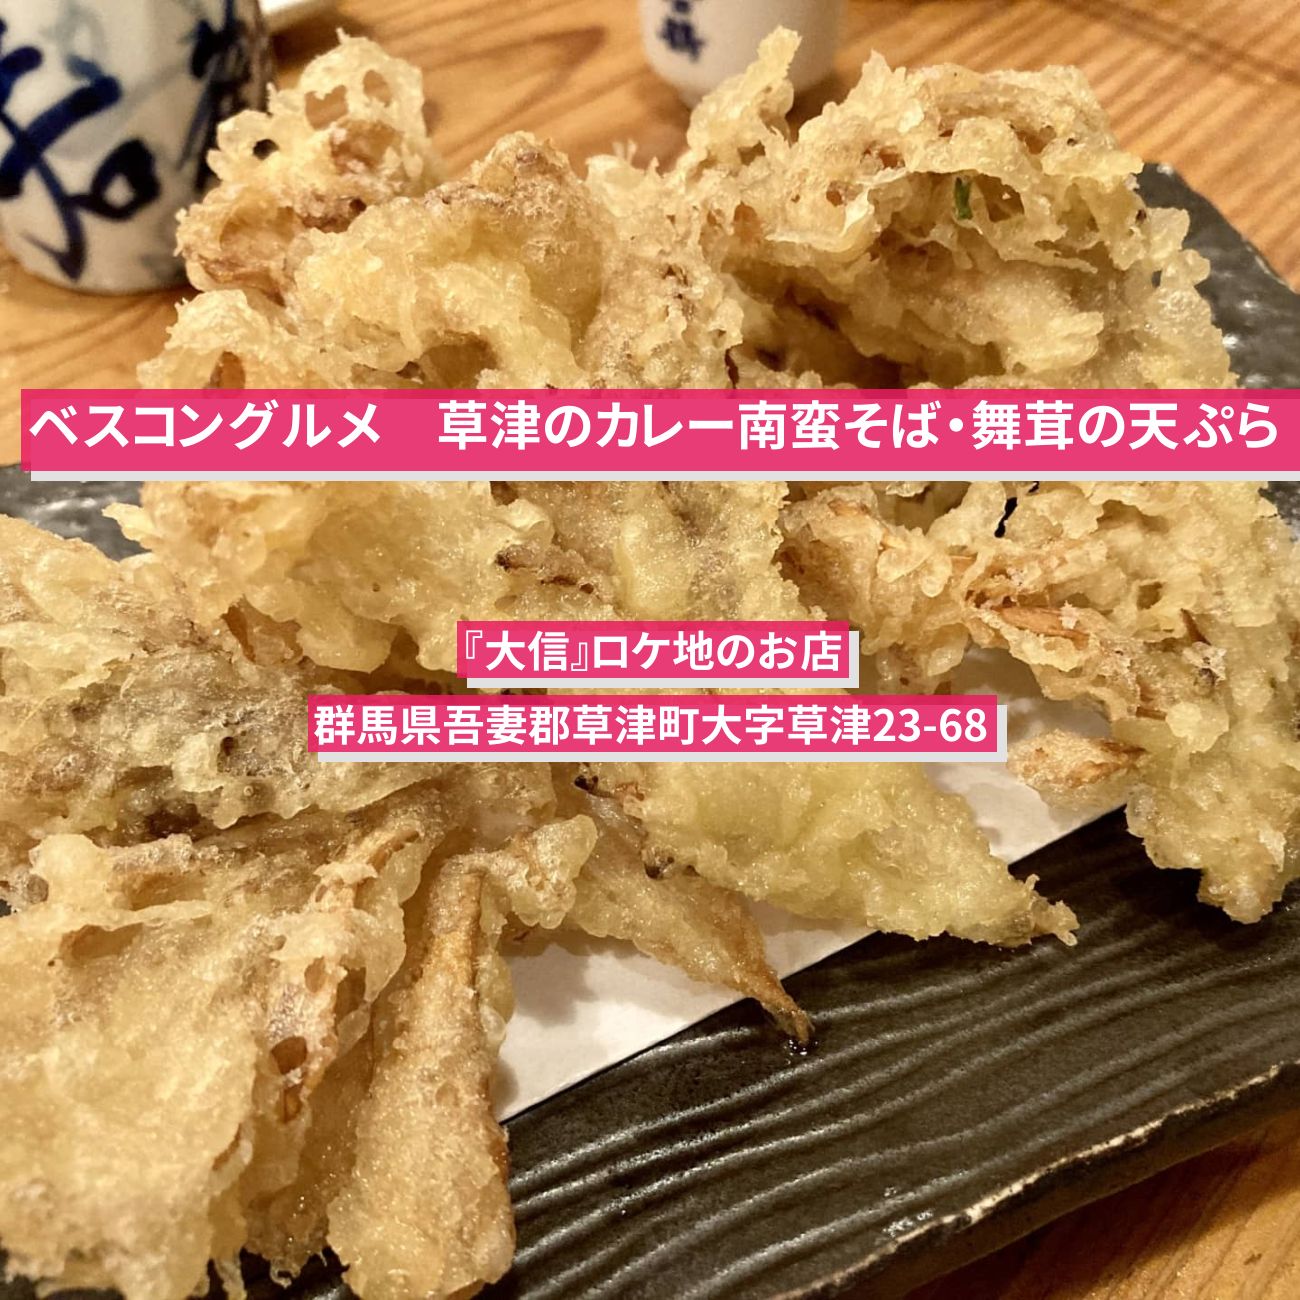 【ベスコングルメ】草津のカレー南蛮そば・舞茸の天ぷら『大信』ロケ地のお店